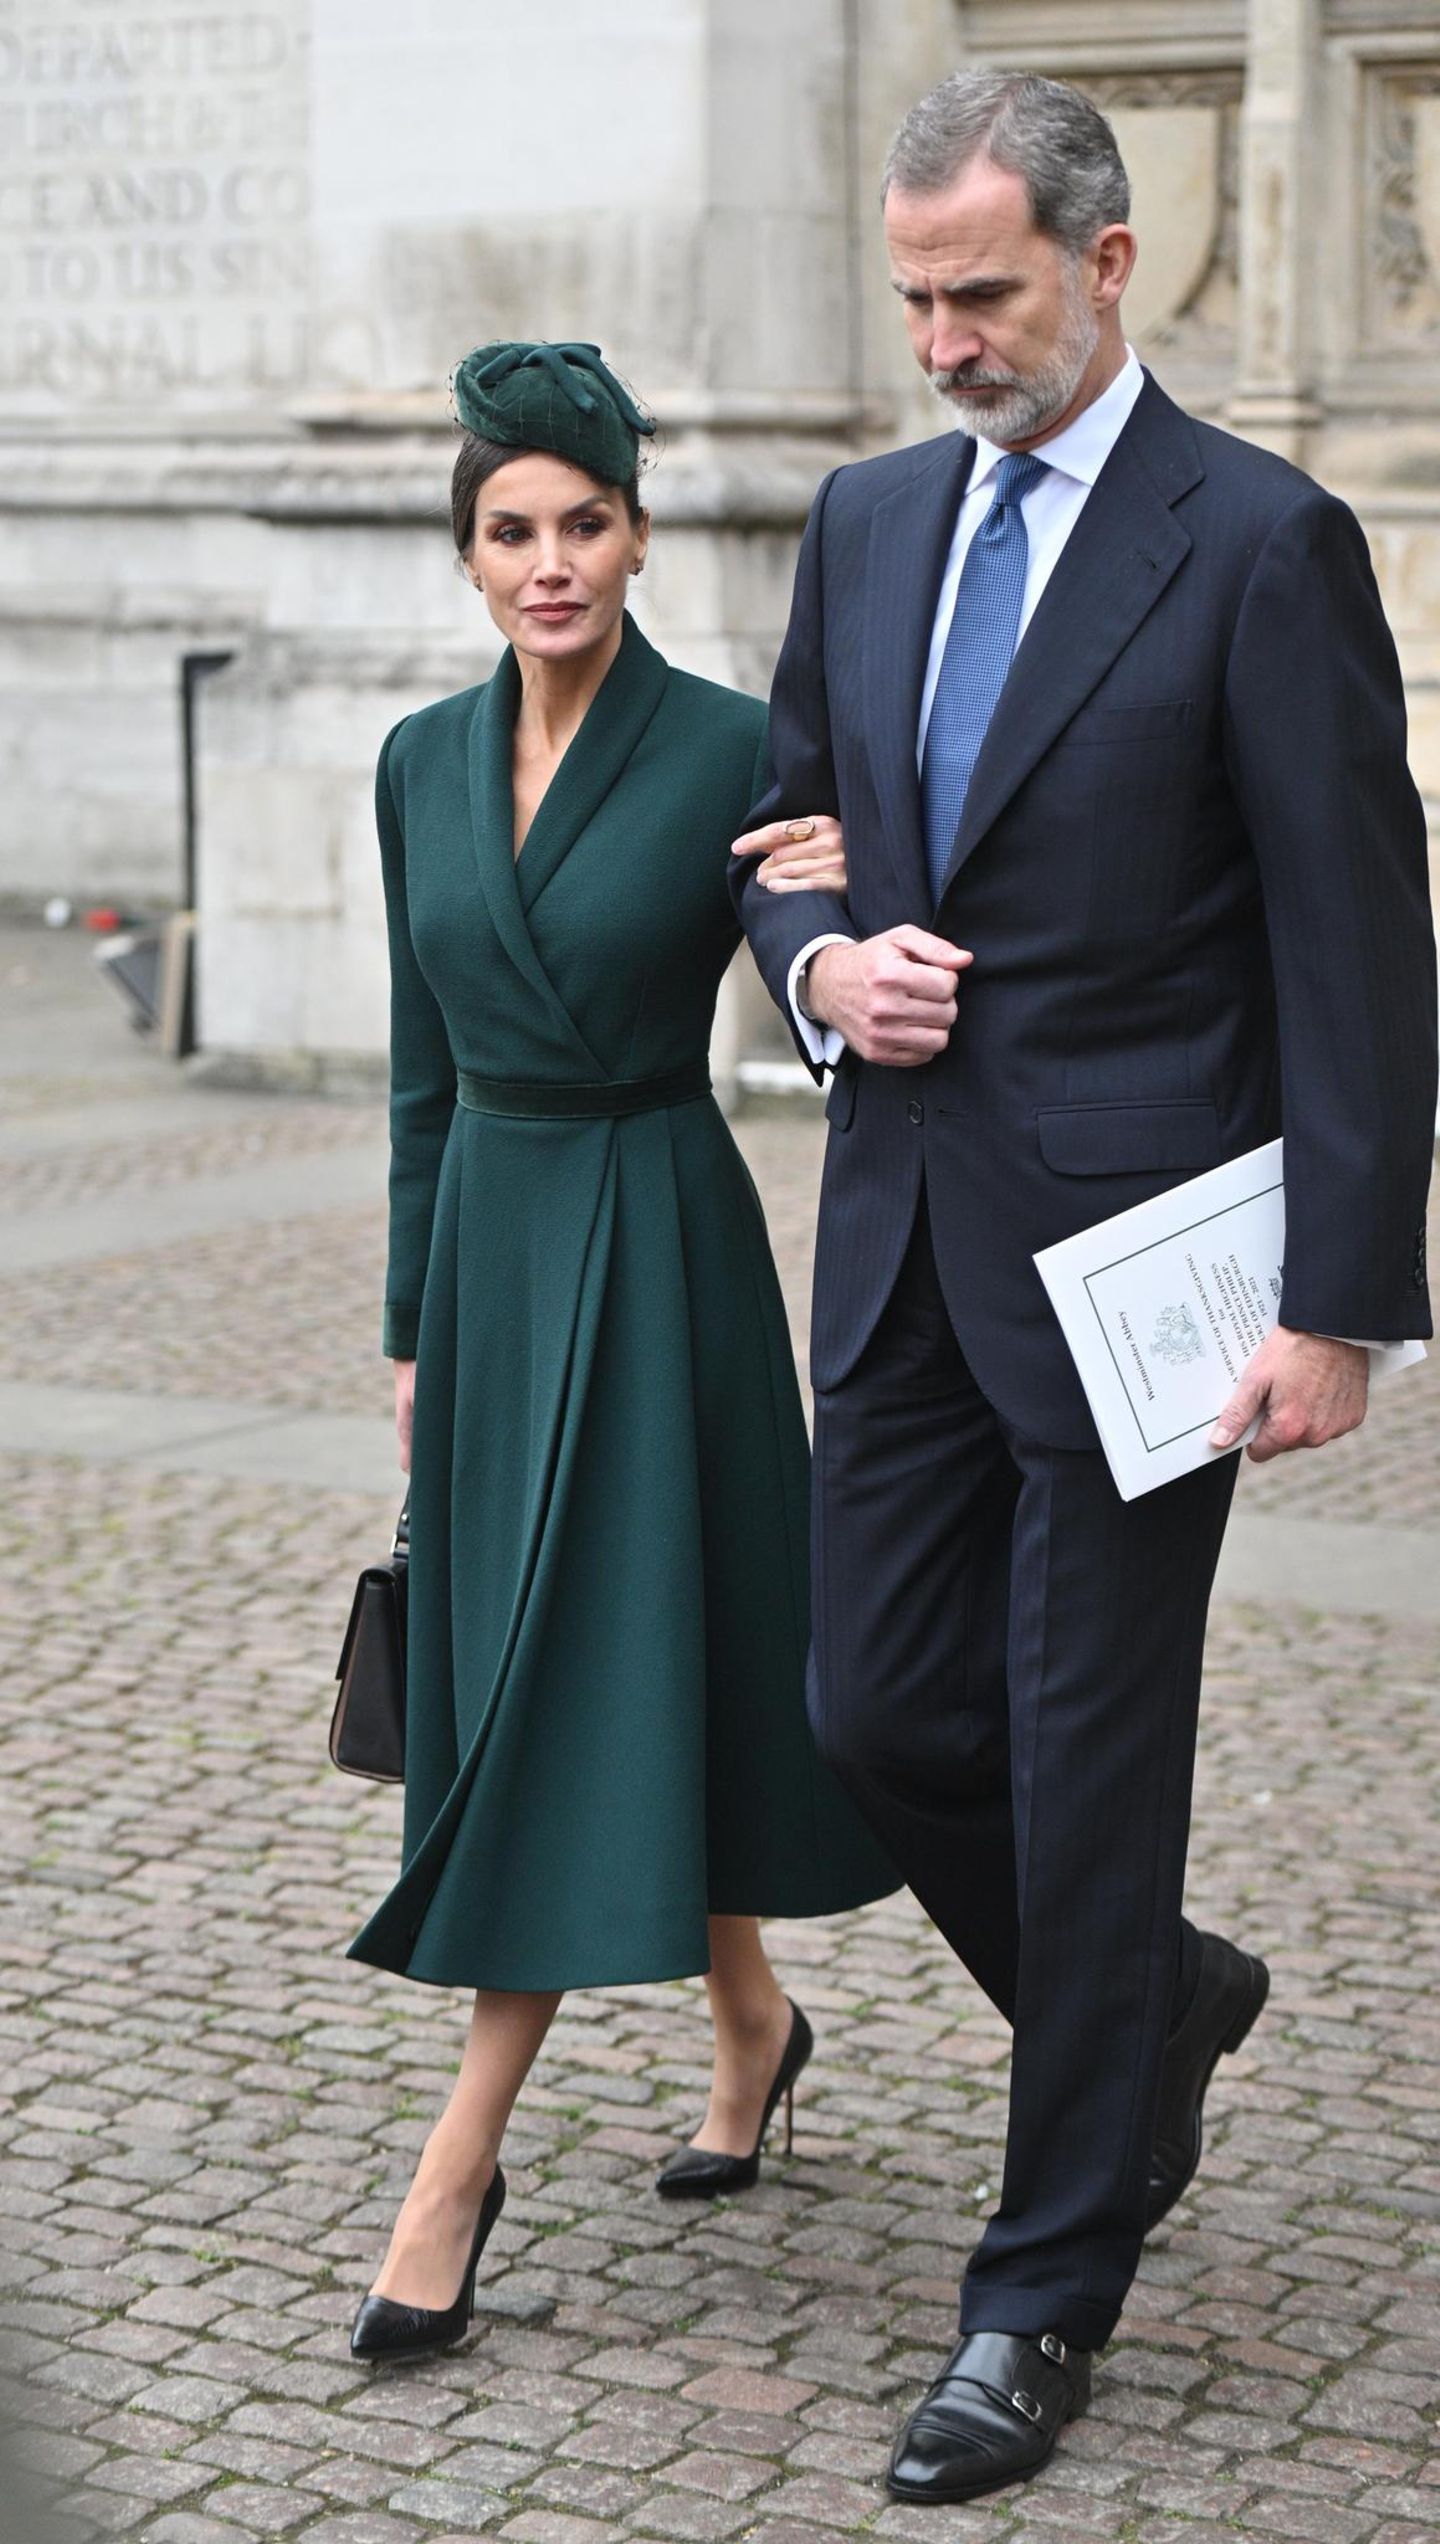 Anders als Herzogin Catherine, wählt Königin Letizia für die Gedenkfeier zu Ehren Prinz Philips ein dunkelgrünes Outfit. Das taillierte Mantelkleid kombiniert sie sehr elegant mit schwarzen Pumps und einer schwarzen BOSS-Tasche. Über den Grund, weshalb viele Gäste Grün tragen, lässt sich bisher nur spekulieren. Auch die Queen wählt ein grünes Kleid.